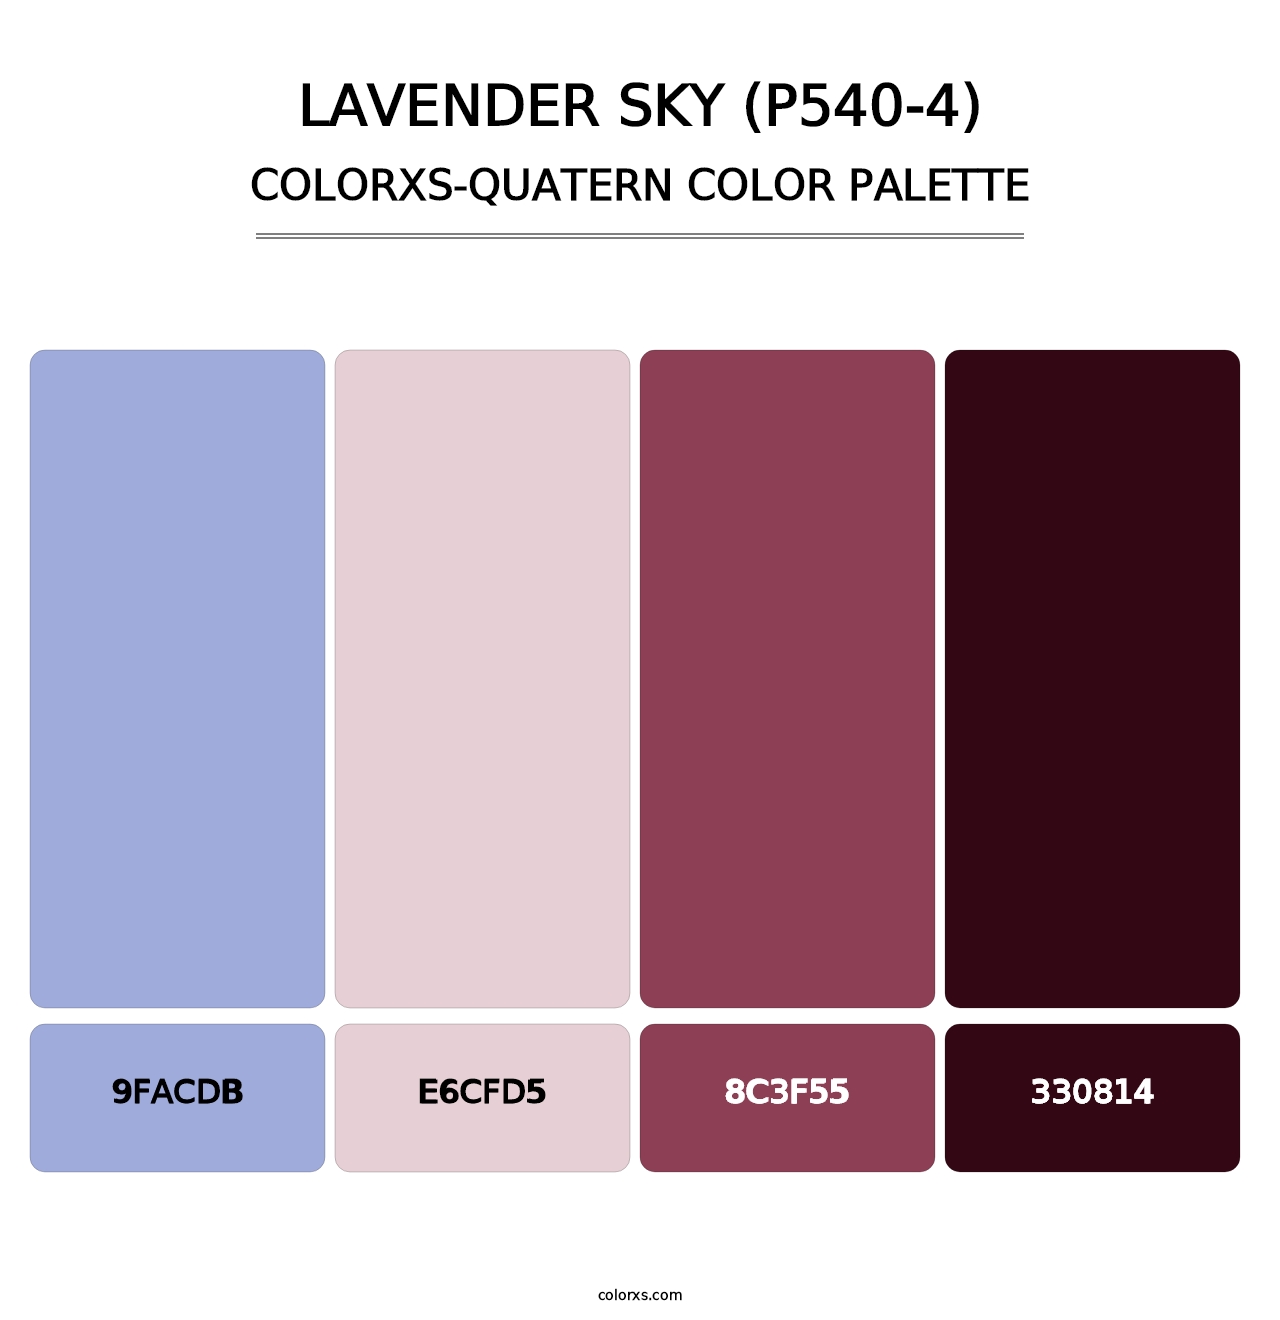 Lavender Sky (P540-4) - Colorxs Quatern Palette